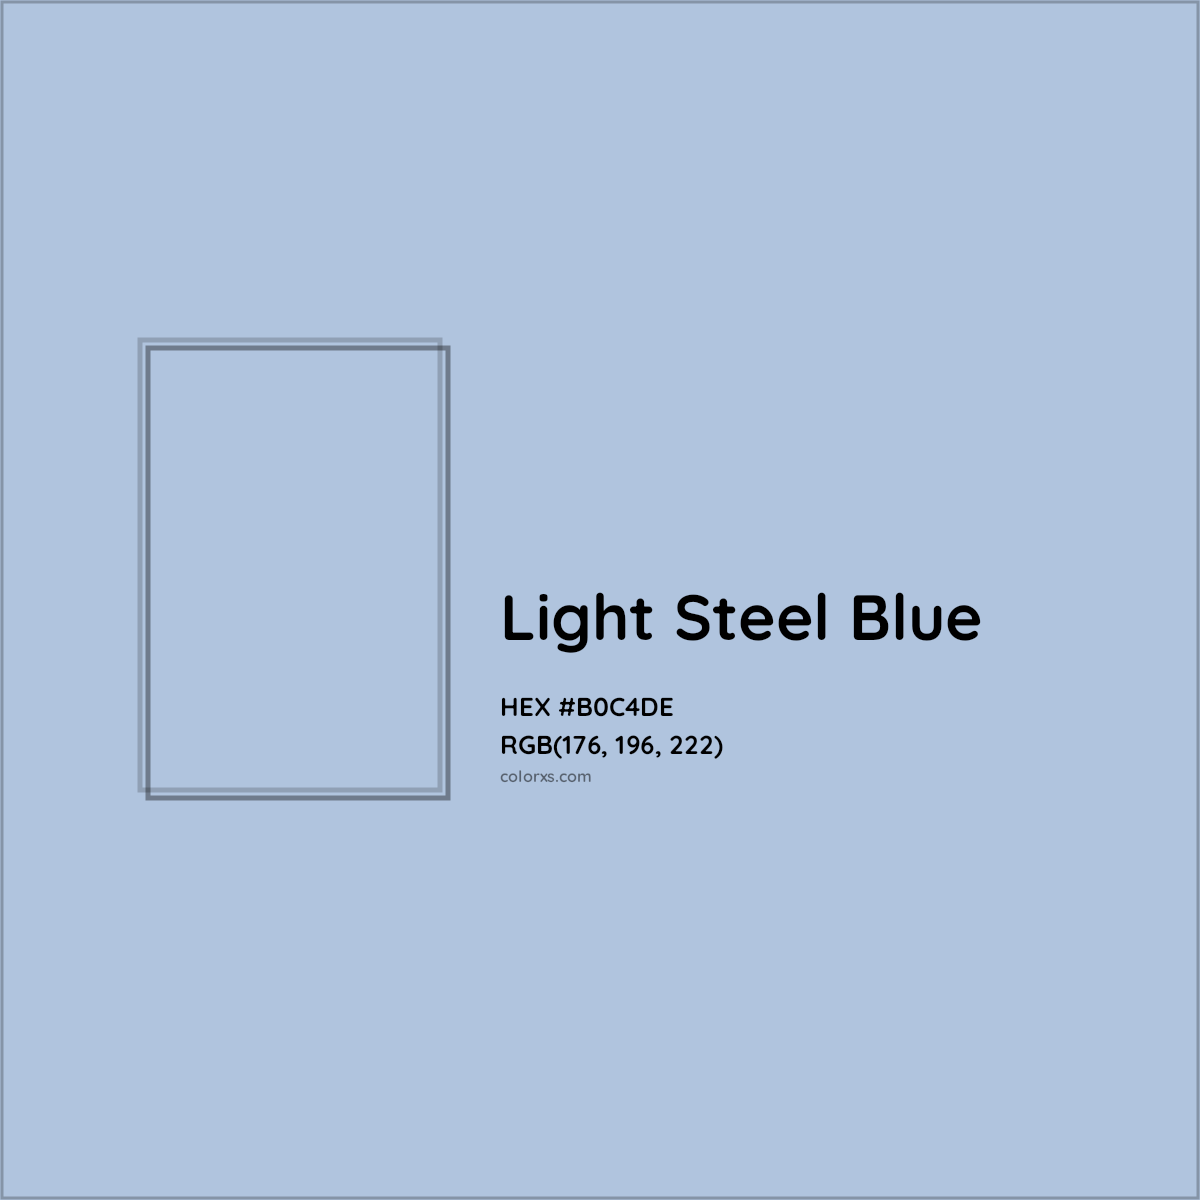 HEX #B0C4DE Light Steel Blue Color - Color Code